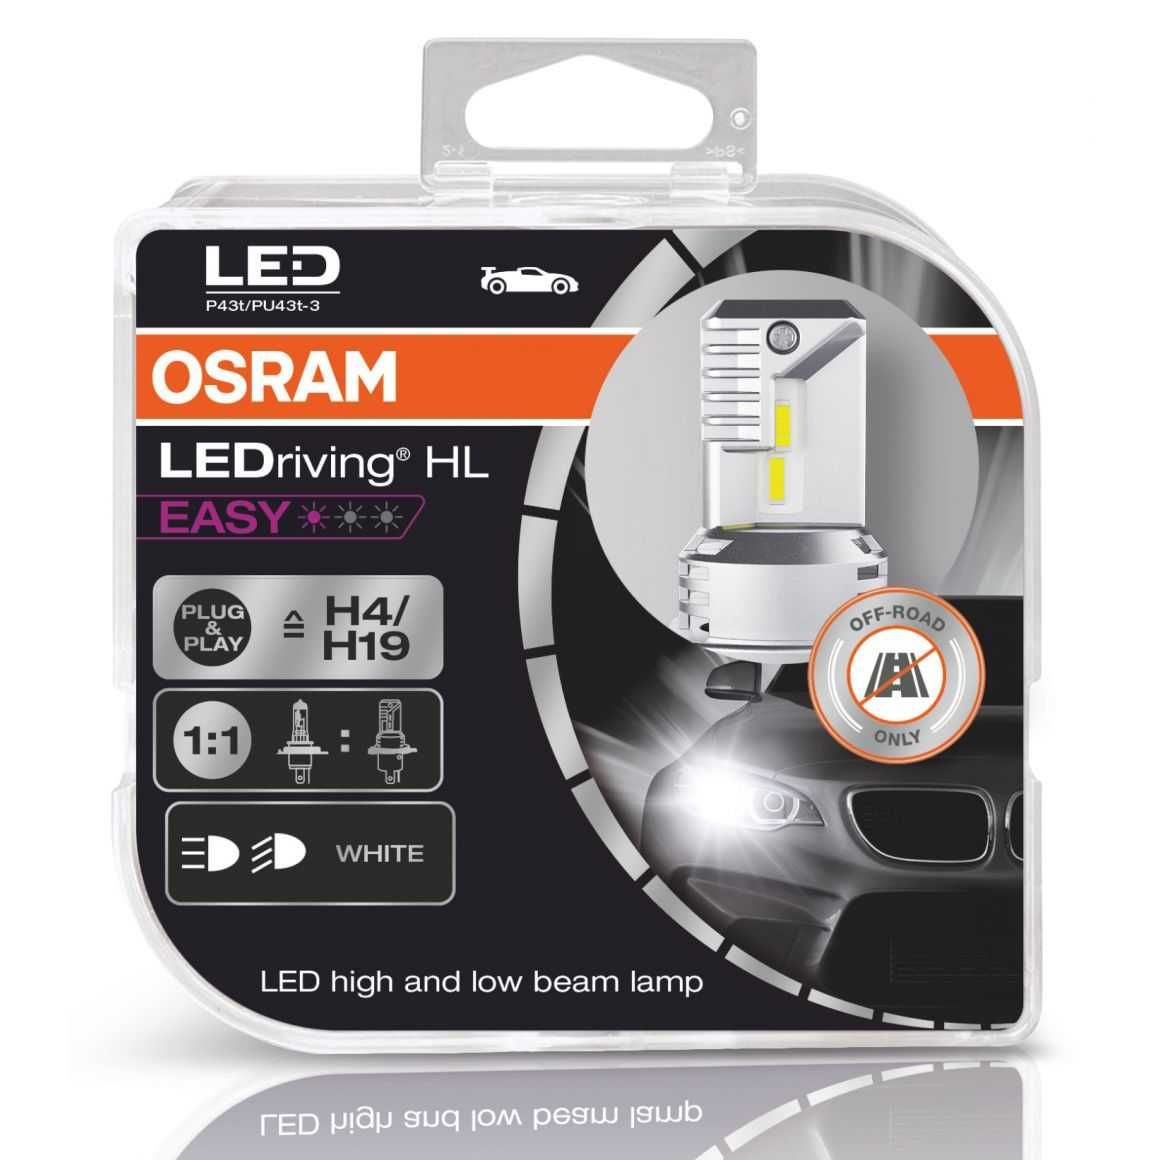 LED крушки за автомобил Osram LEDriving HL EASY, H4 / H19 с вентилатор